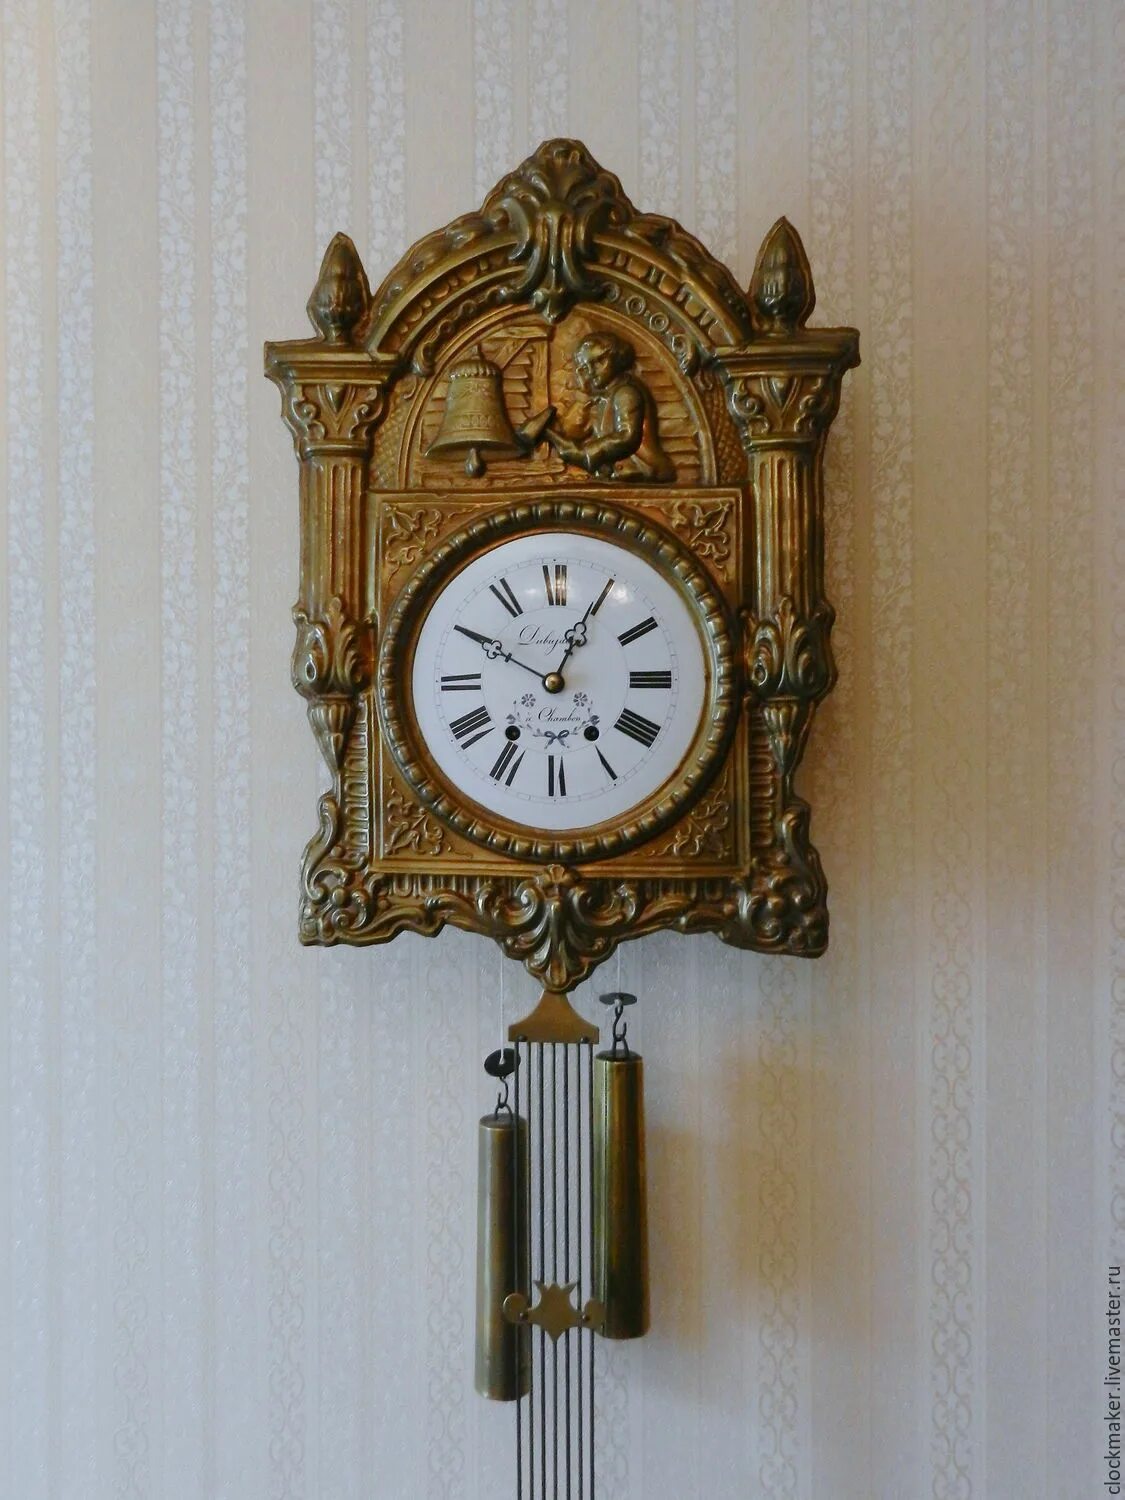 Ходики с гирями и маятником Мозер. Часы -ходики Мозер. Часы ходики 19 век. Часы ходики с маятником.